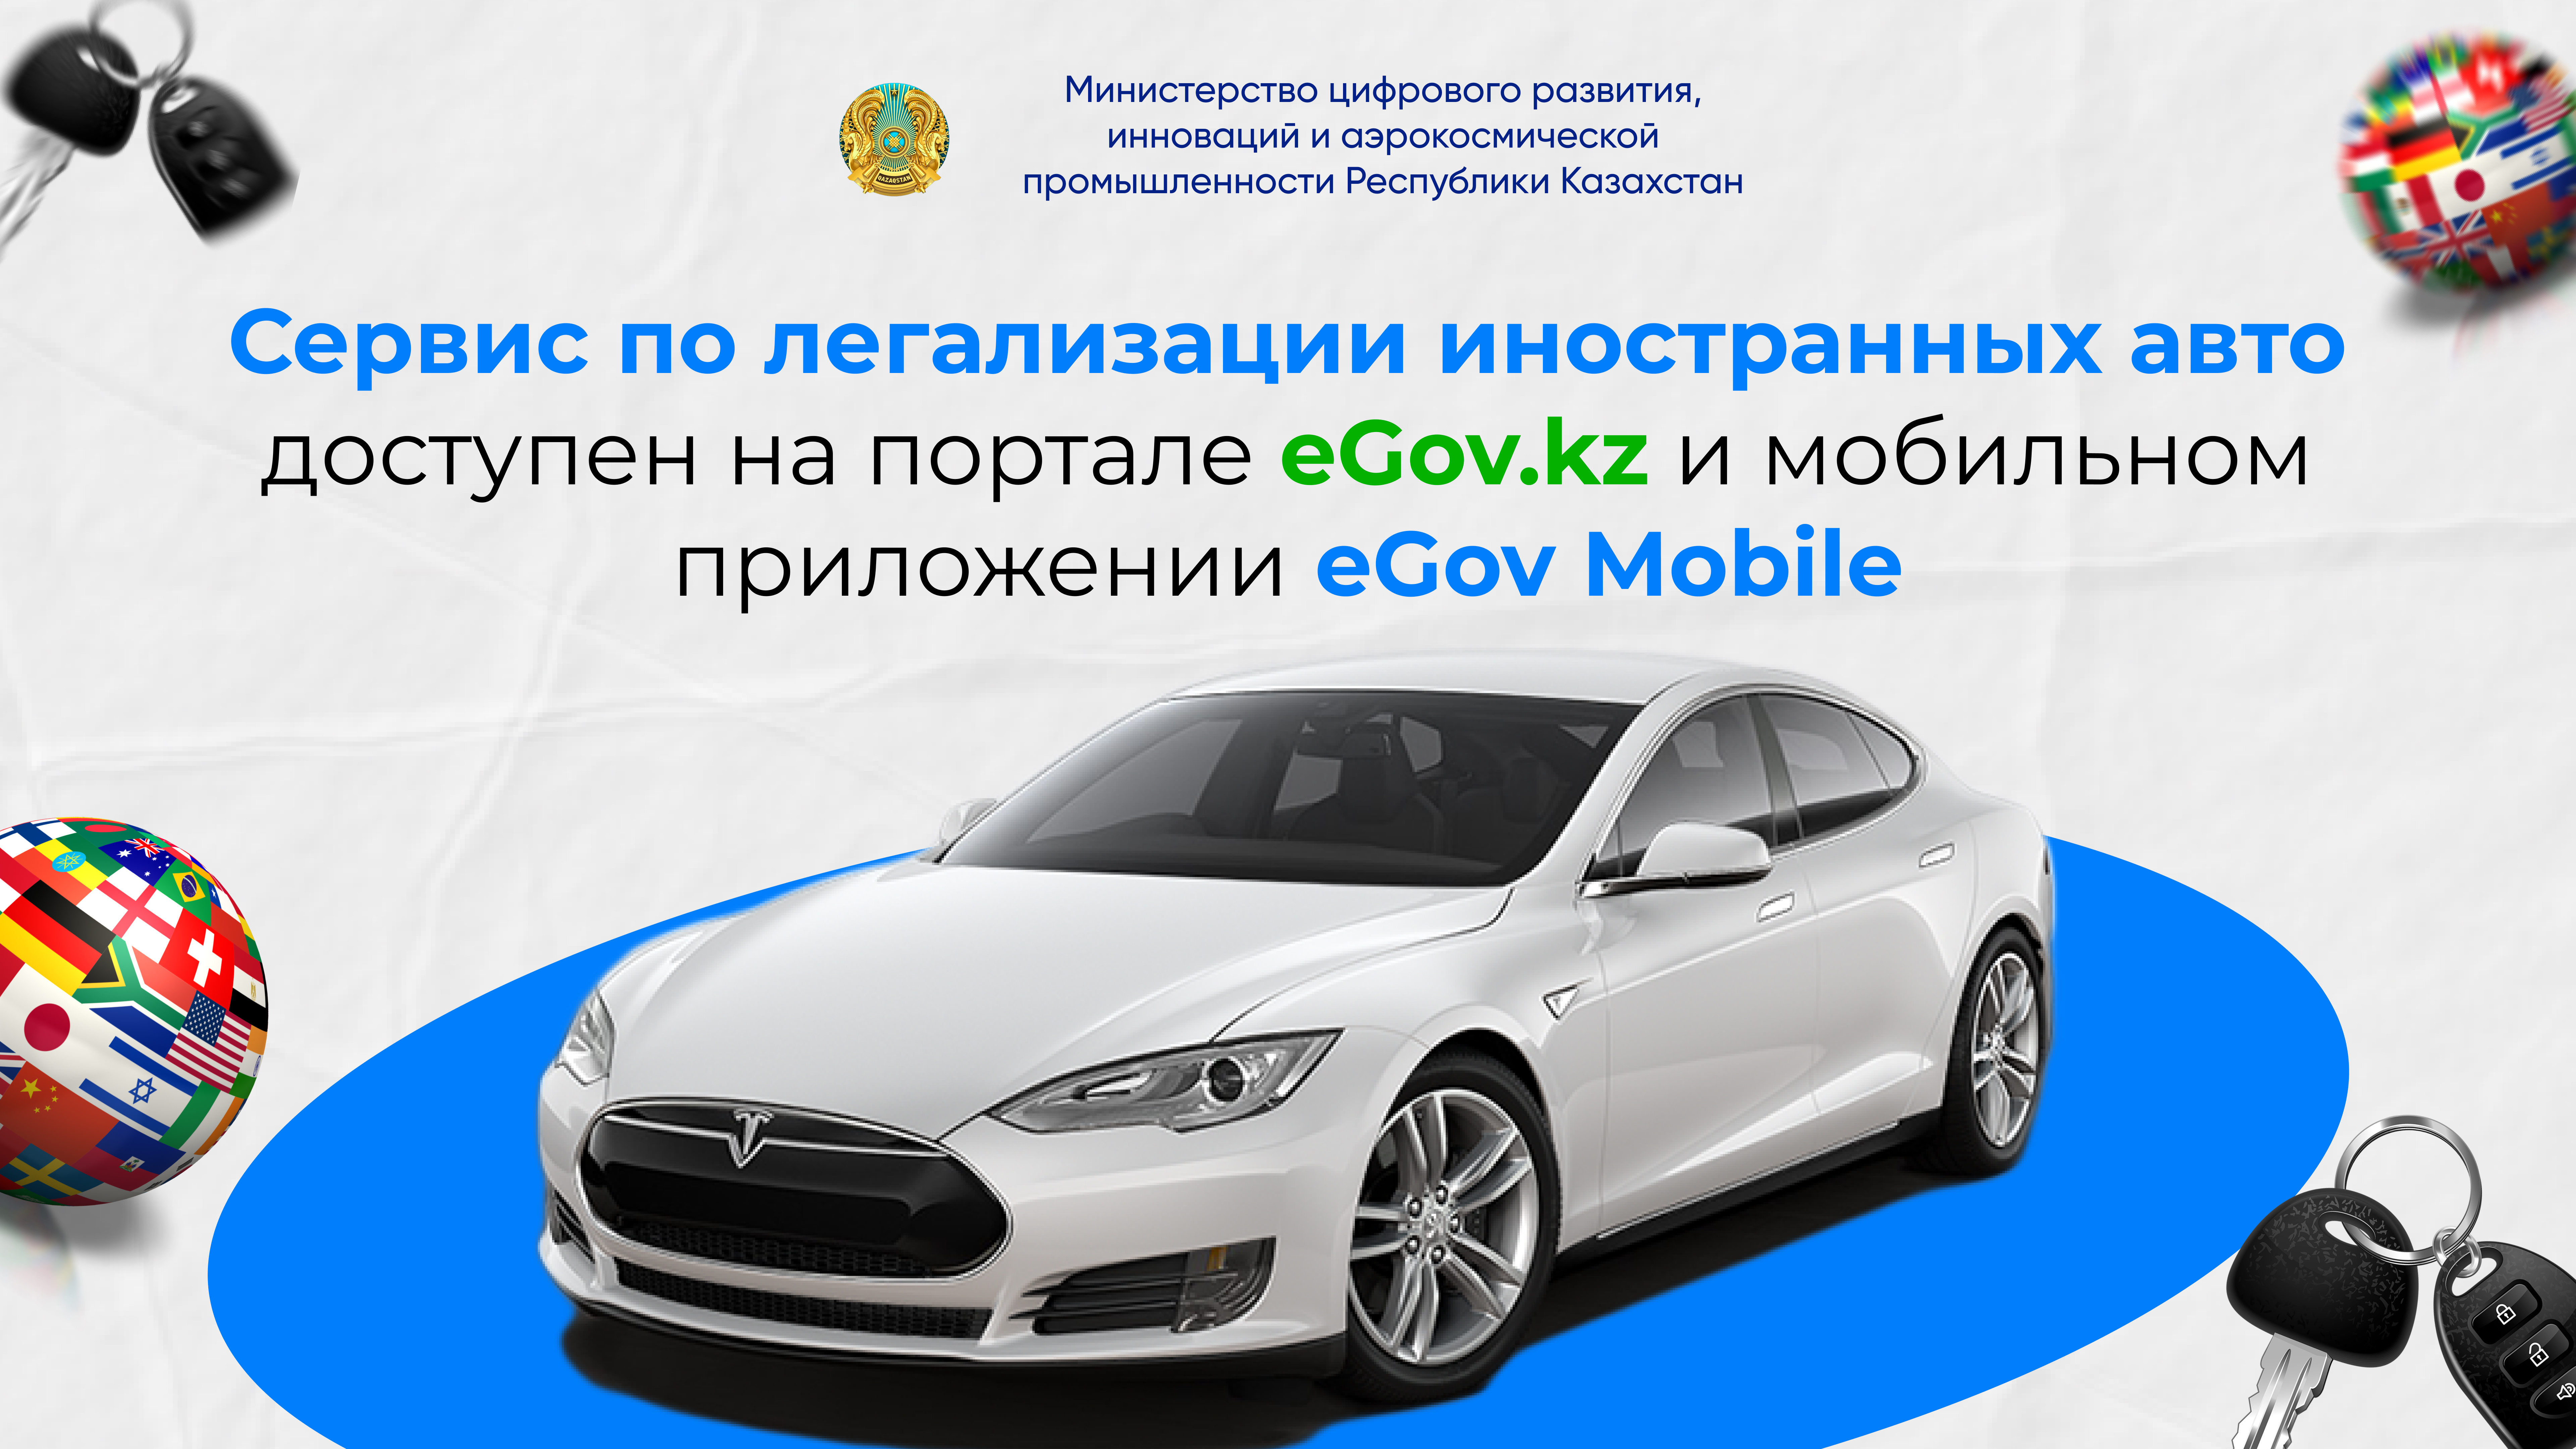 Сервис по легализации иностранных авто доступен на портале eGov.kz и мобильном приложении eGov Mobile